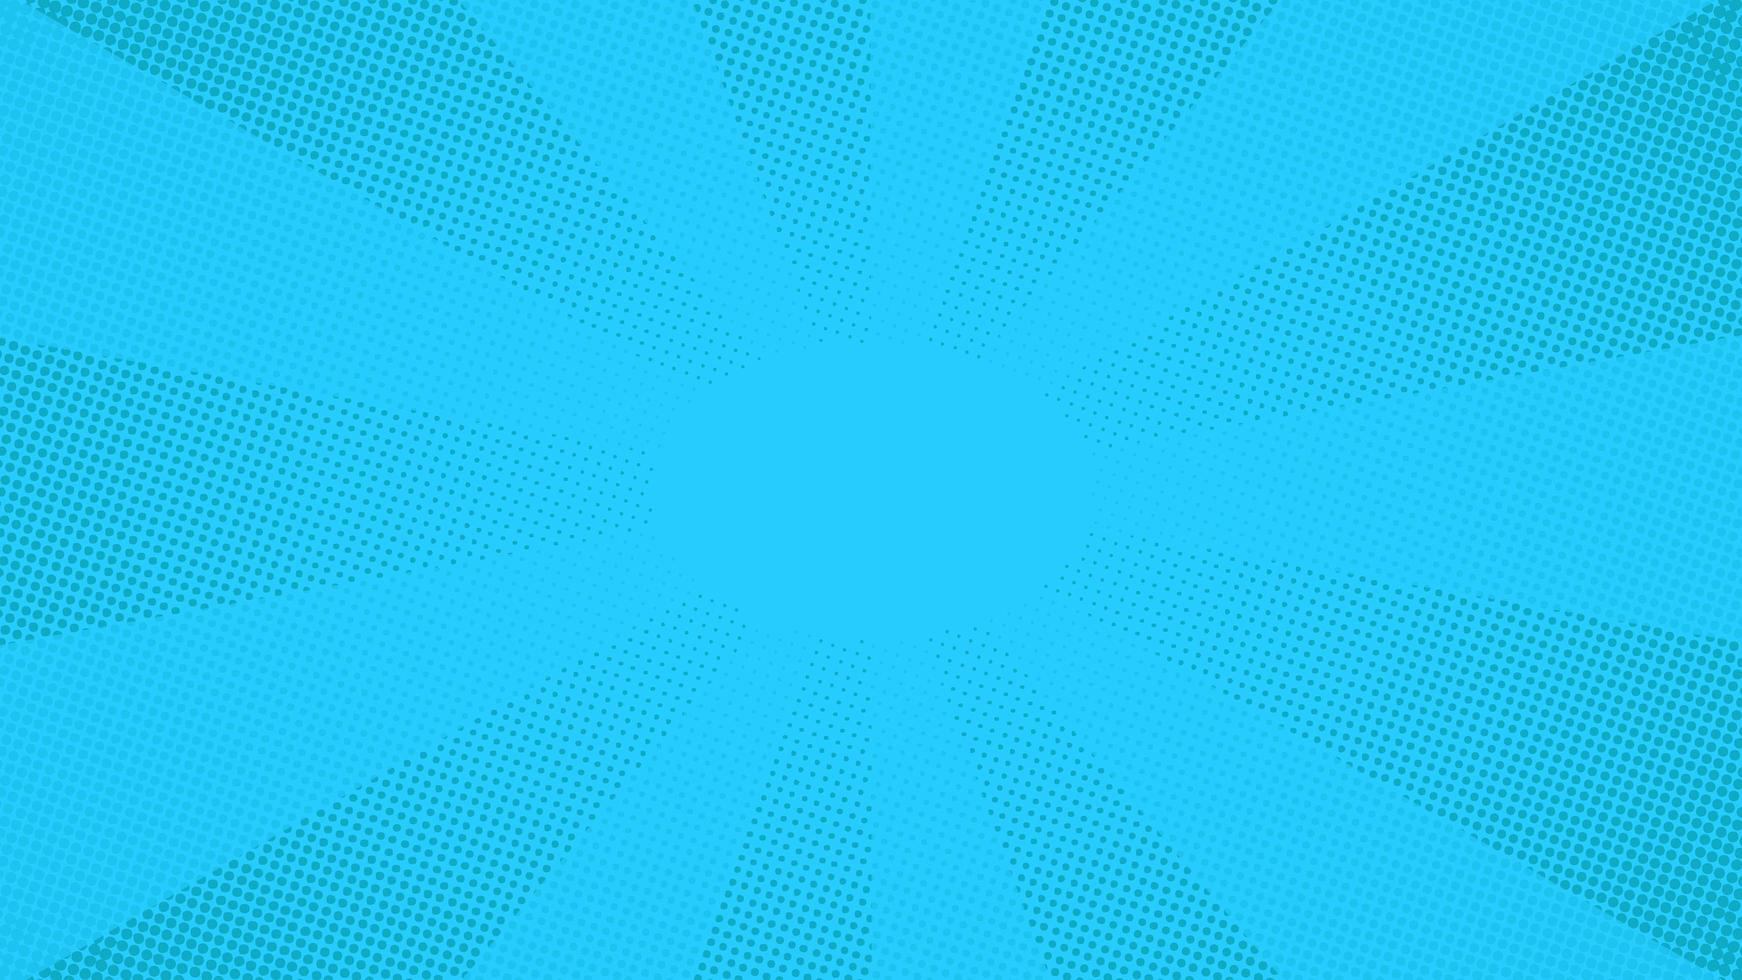 blauwe pop-art komische halftone puntjes achtergrond vector